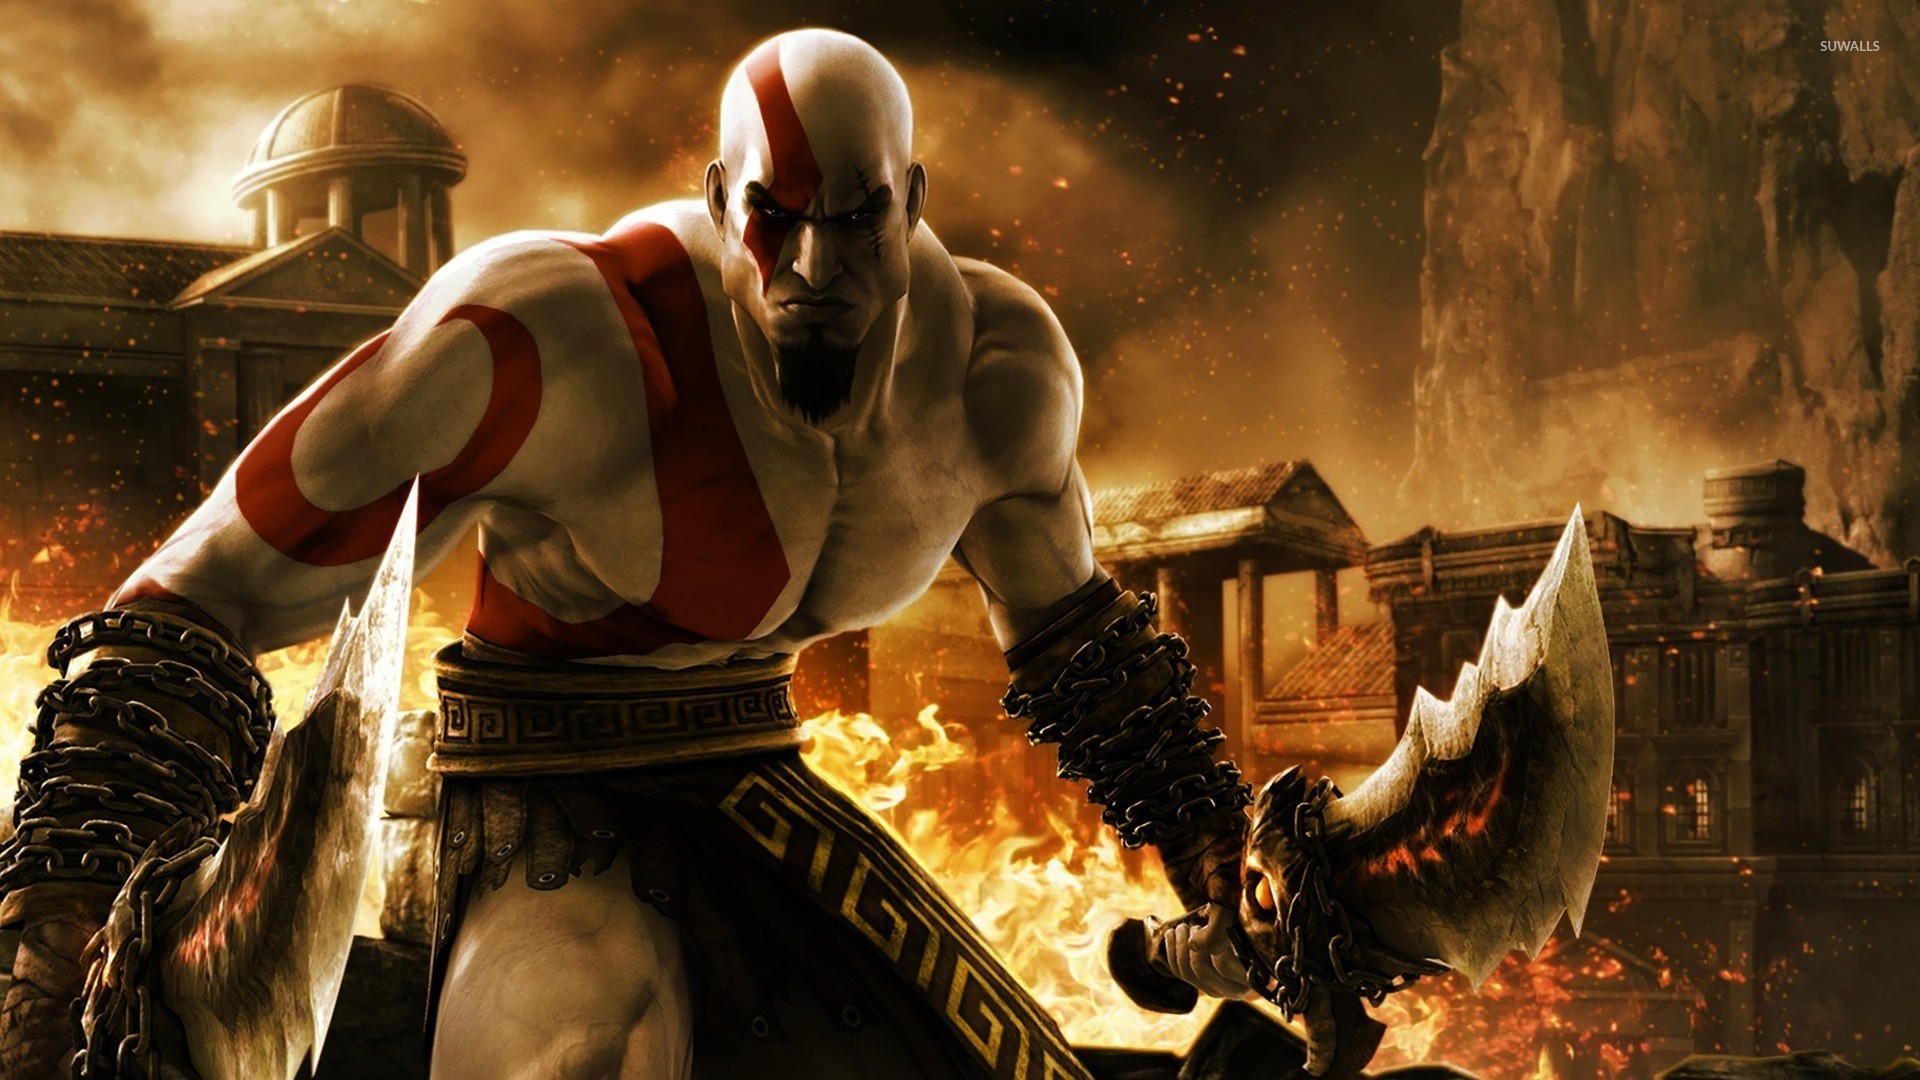 1920x1080 Kratos - God of War 3 wallpaper